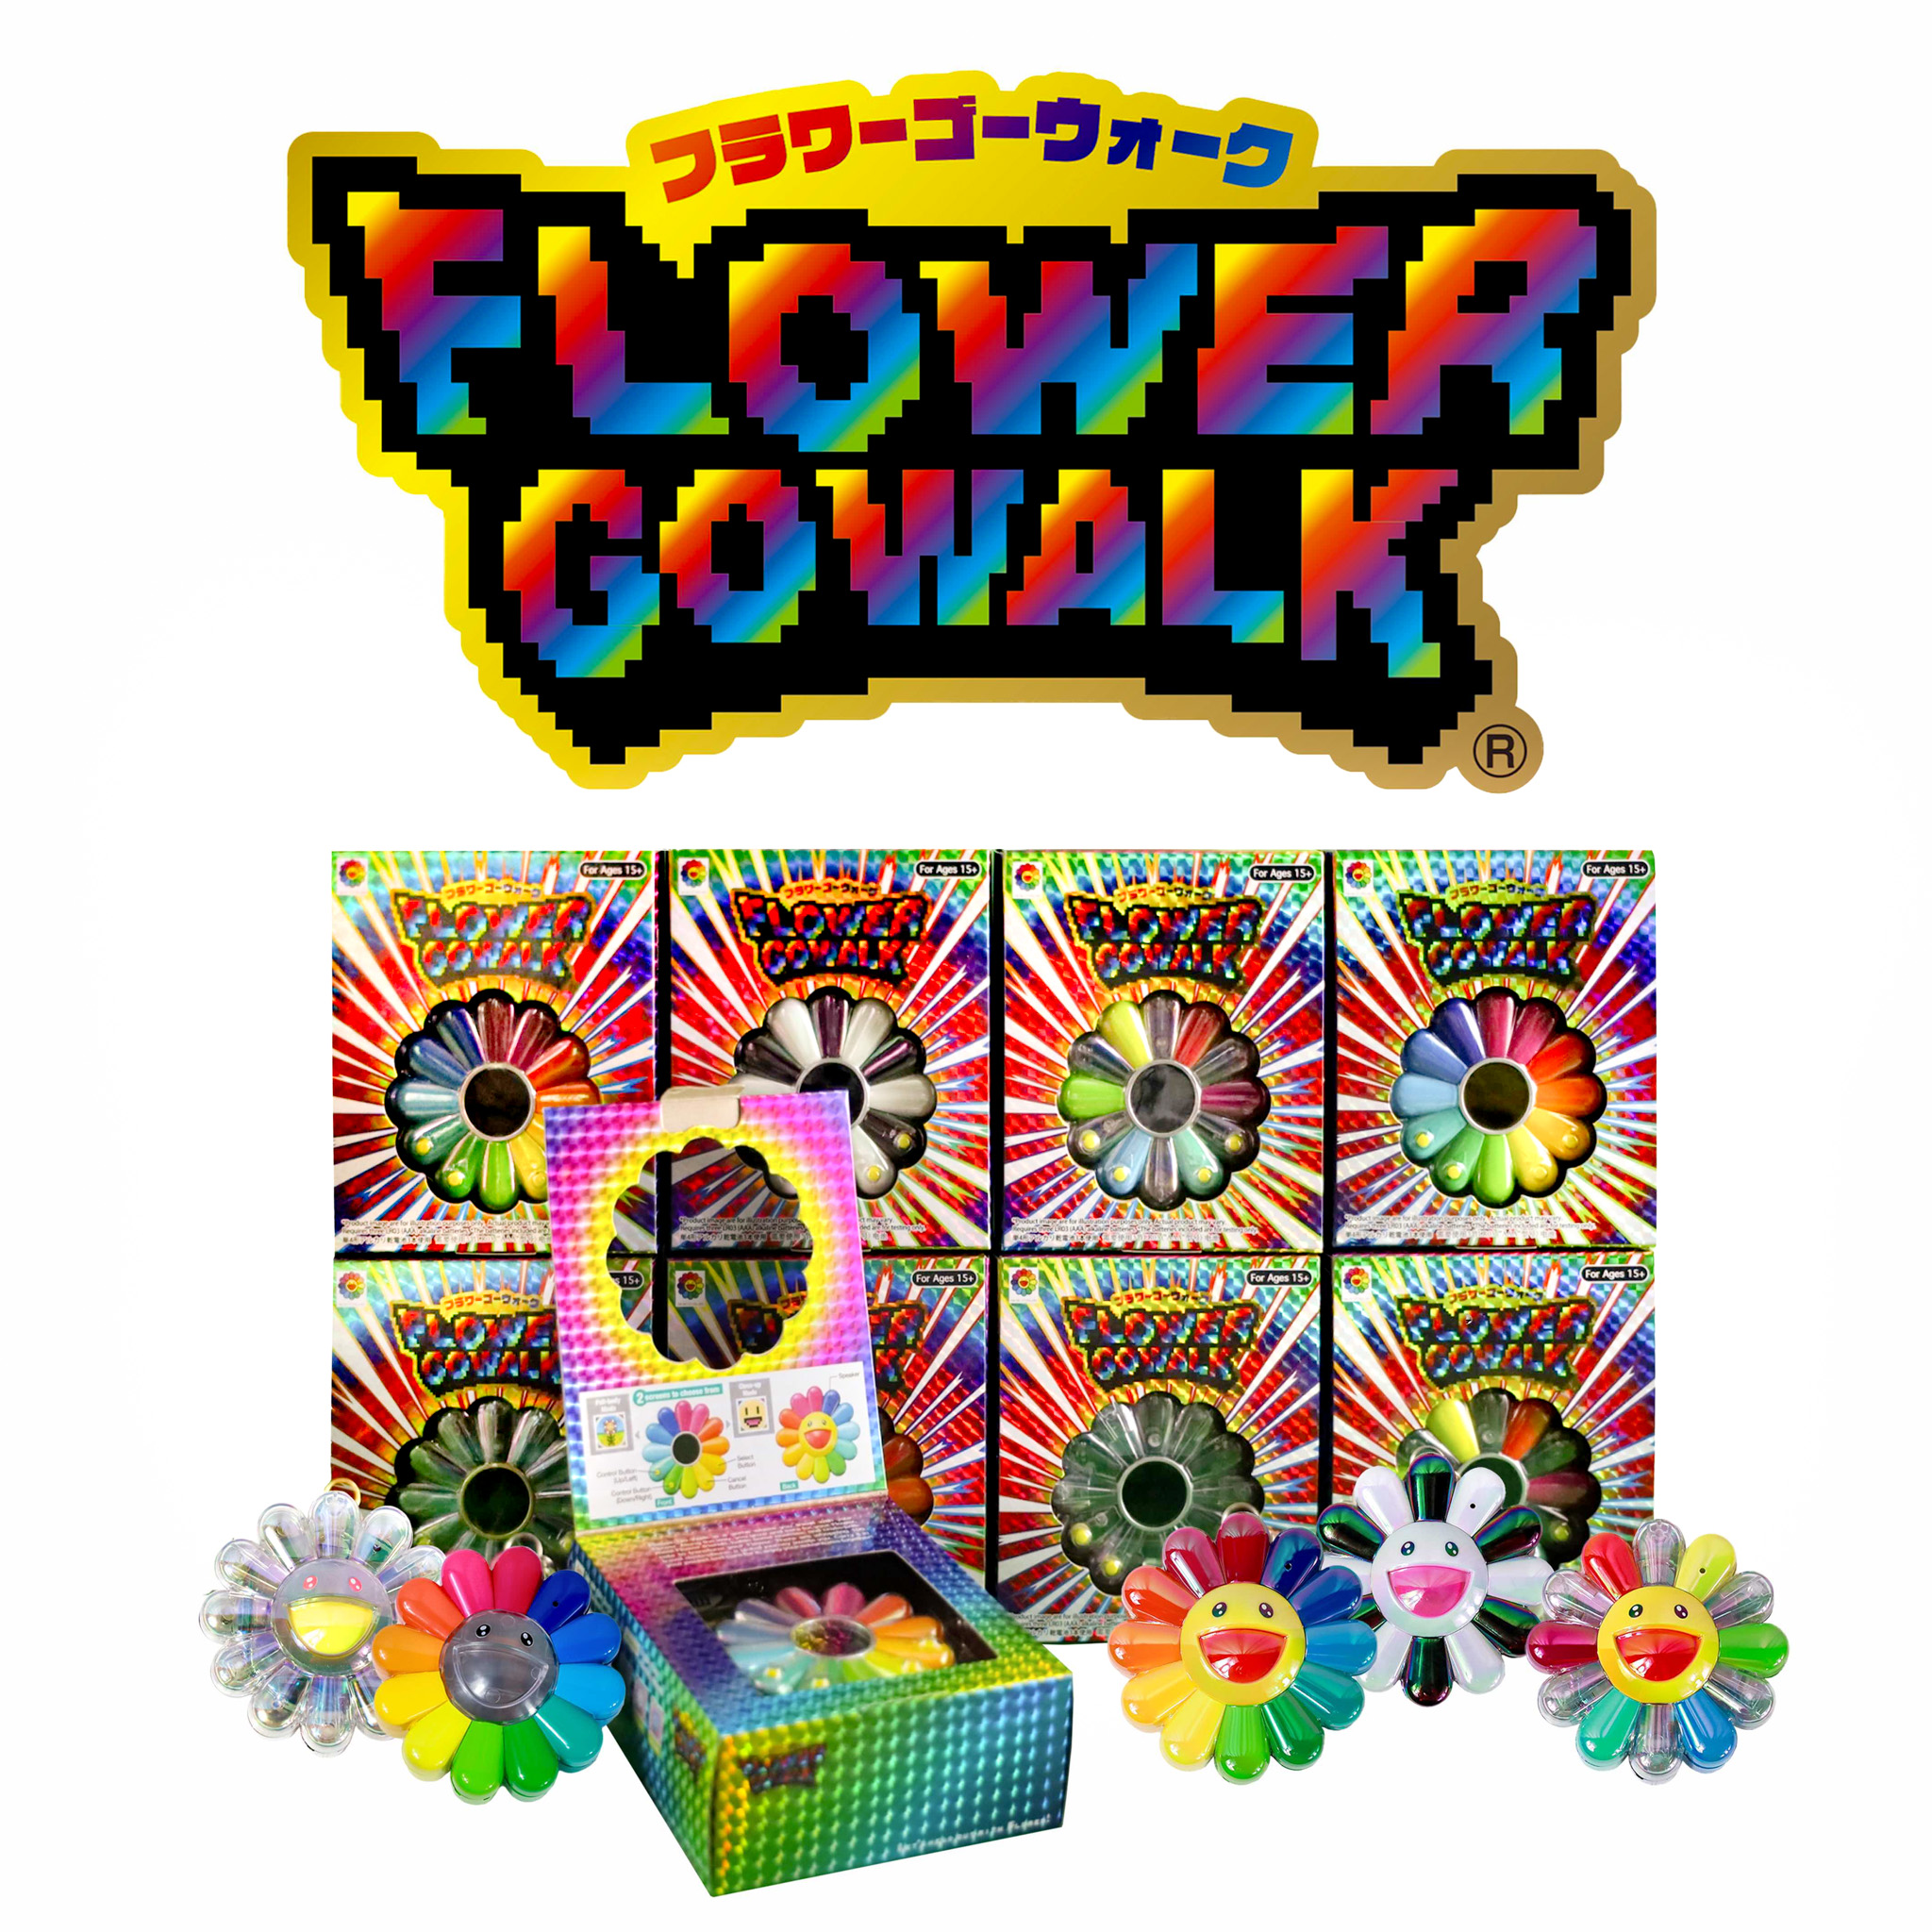 11月24日(金)12時より特設サイトにて、 村上隆新作ゲーム「FLOWER GO